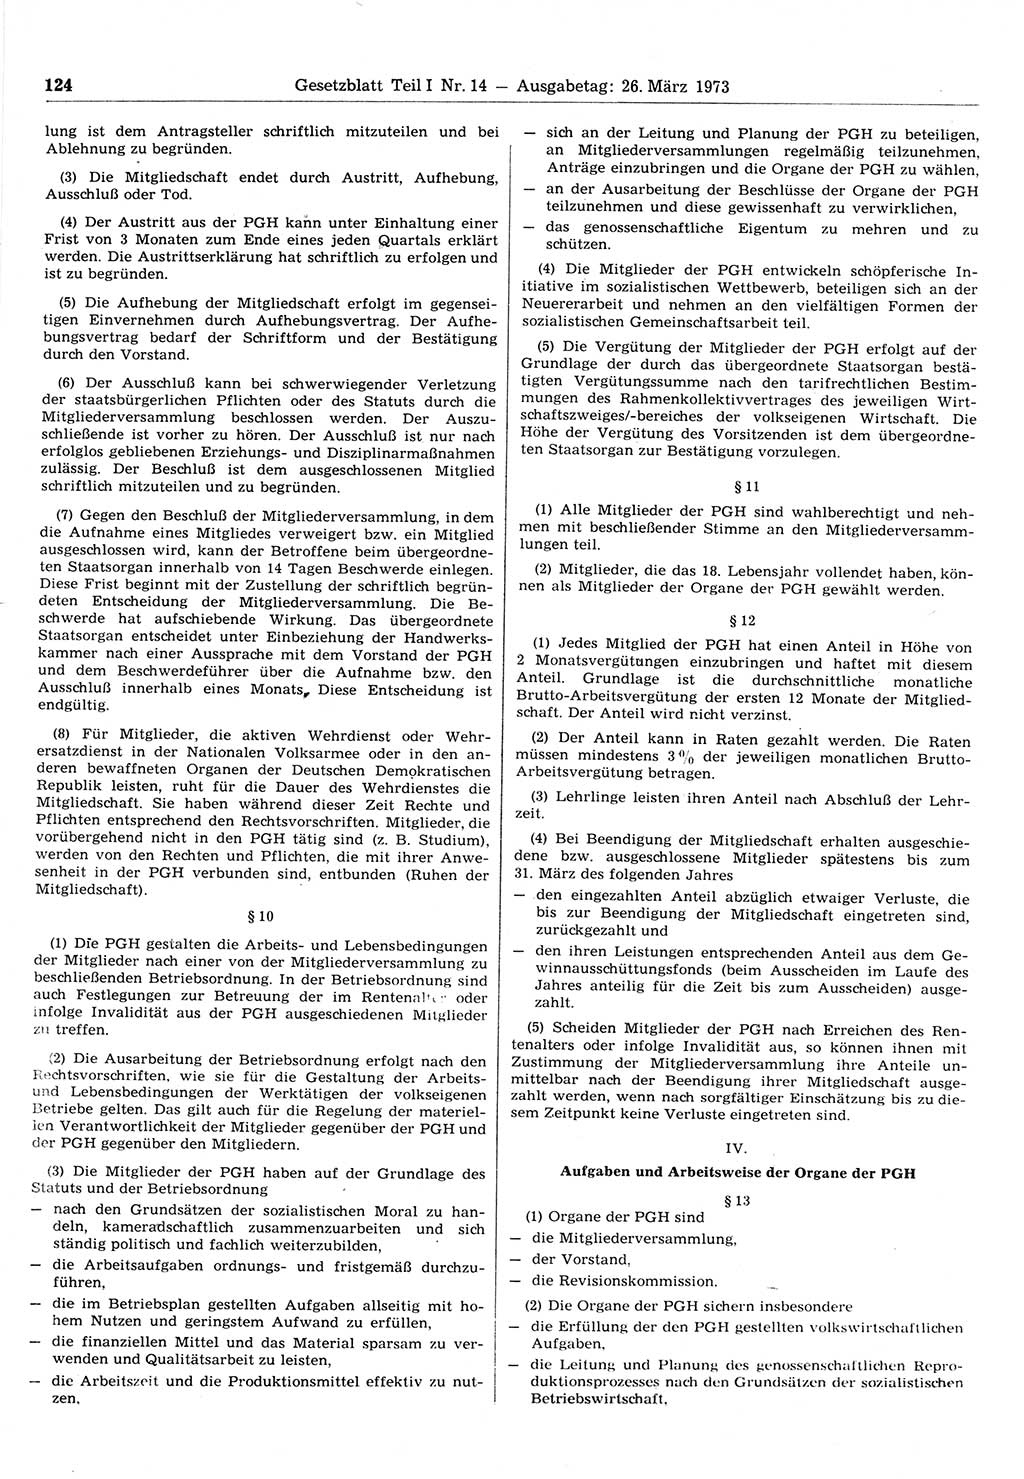 Gesetzblatt (GBl.) der Deutschen Demokratischen Republik (DDR) Teil Ⅰ 1973, Seite 124 (GBl. DDR Ⅰ 1973, S. 124)